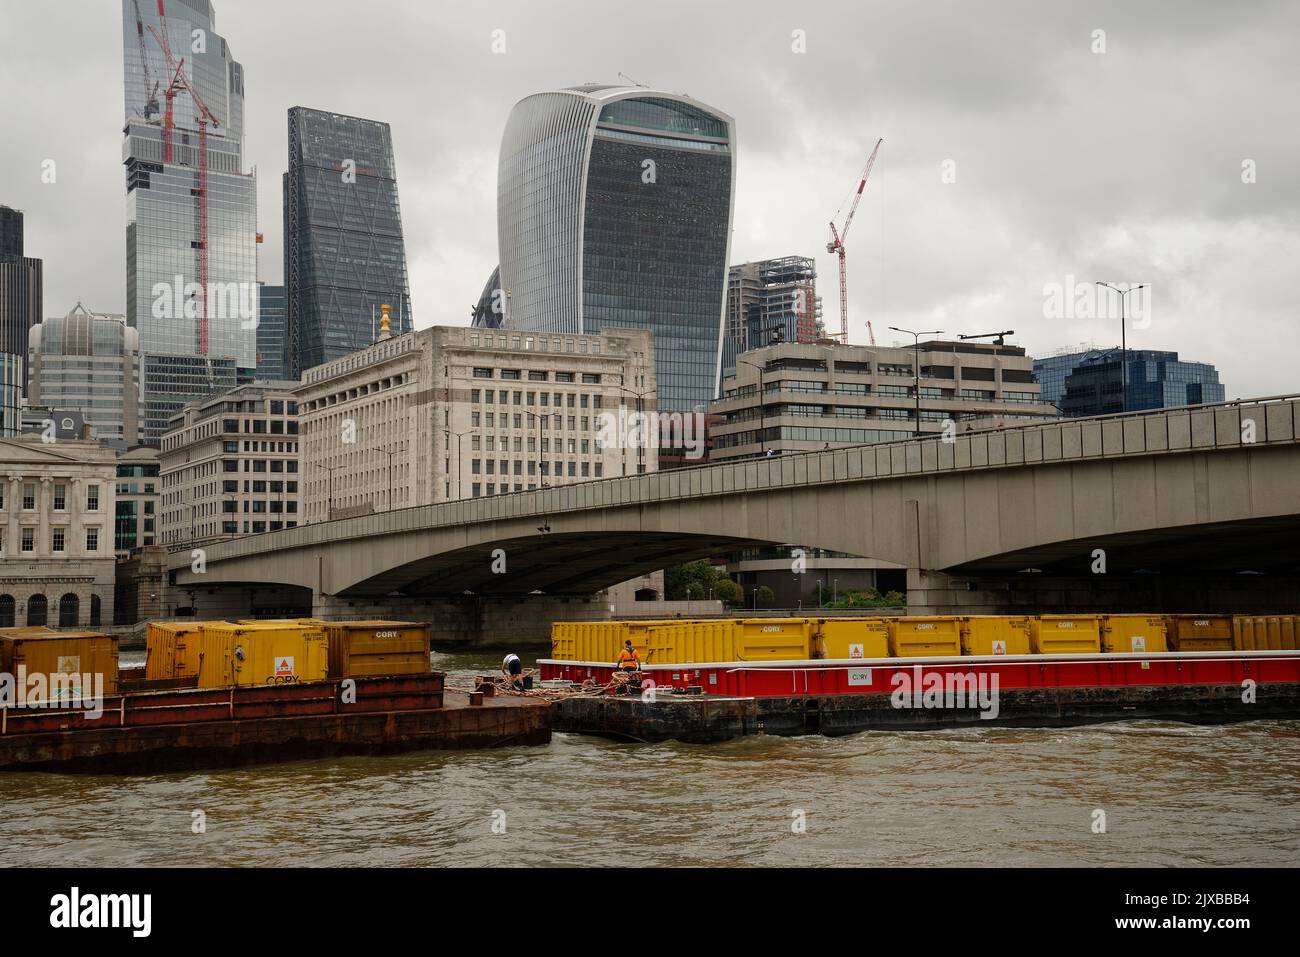 La ville de Londres avec des barges chargées de conteneurs sur la Tamise. Banque D'Images